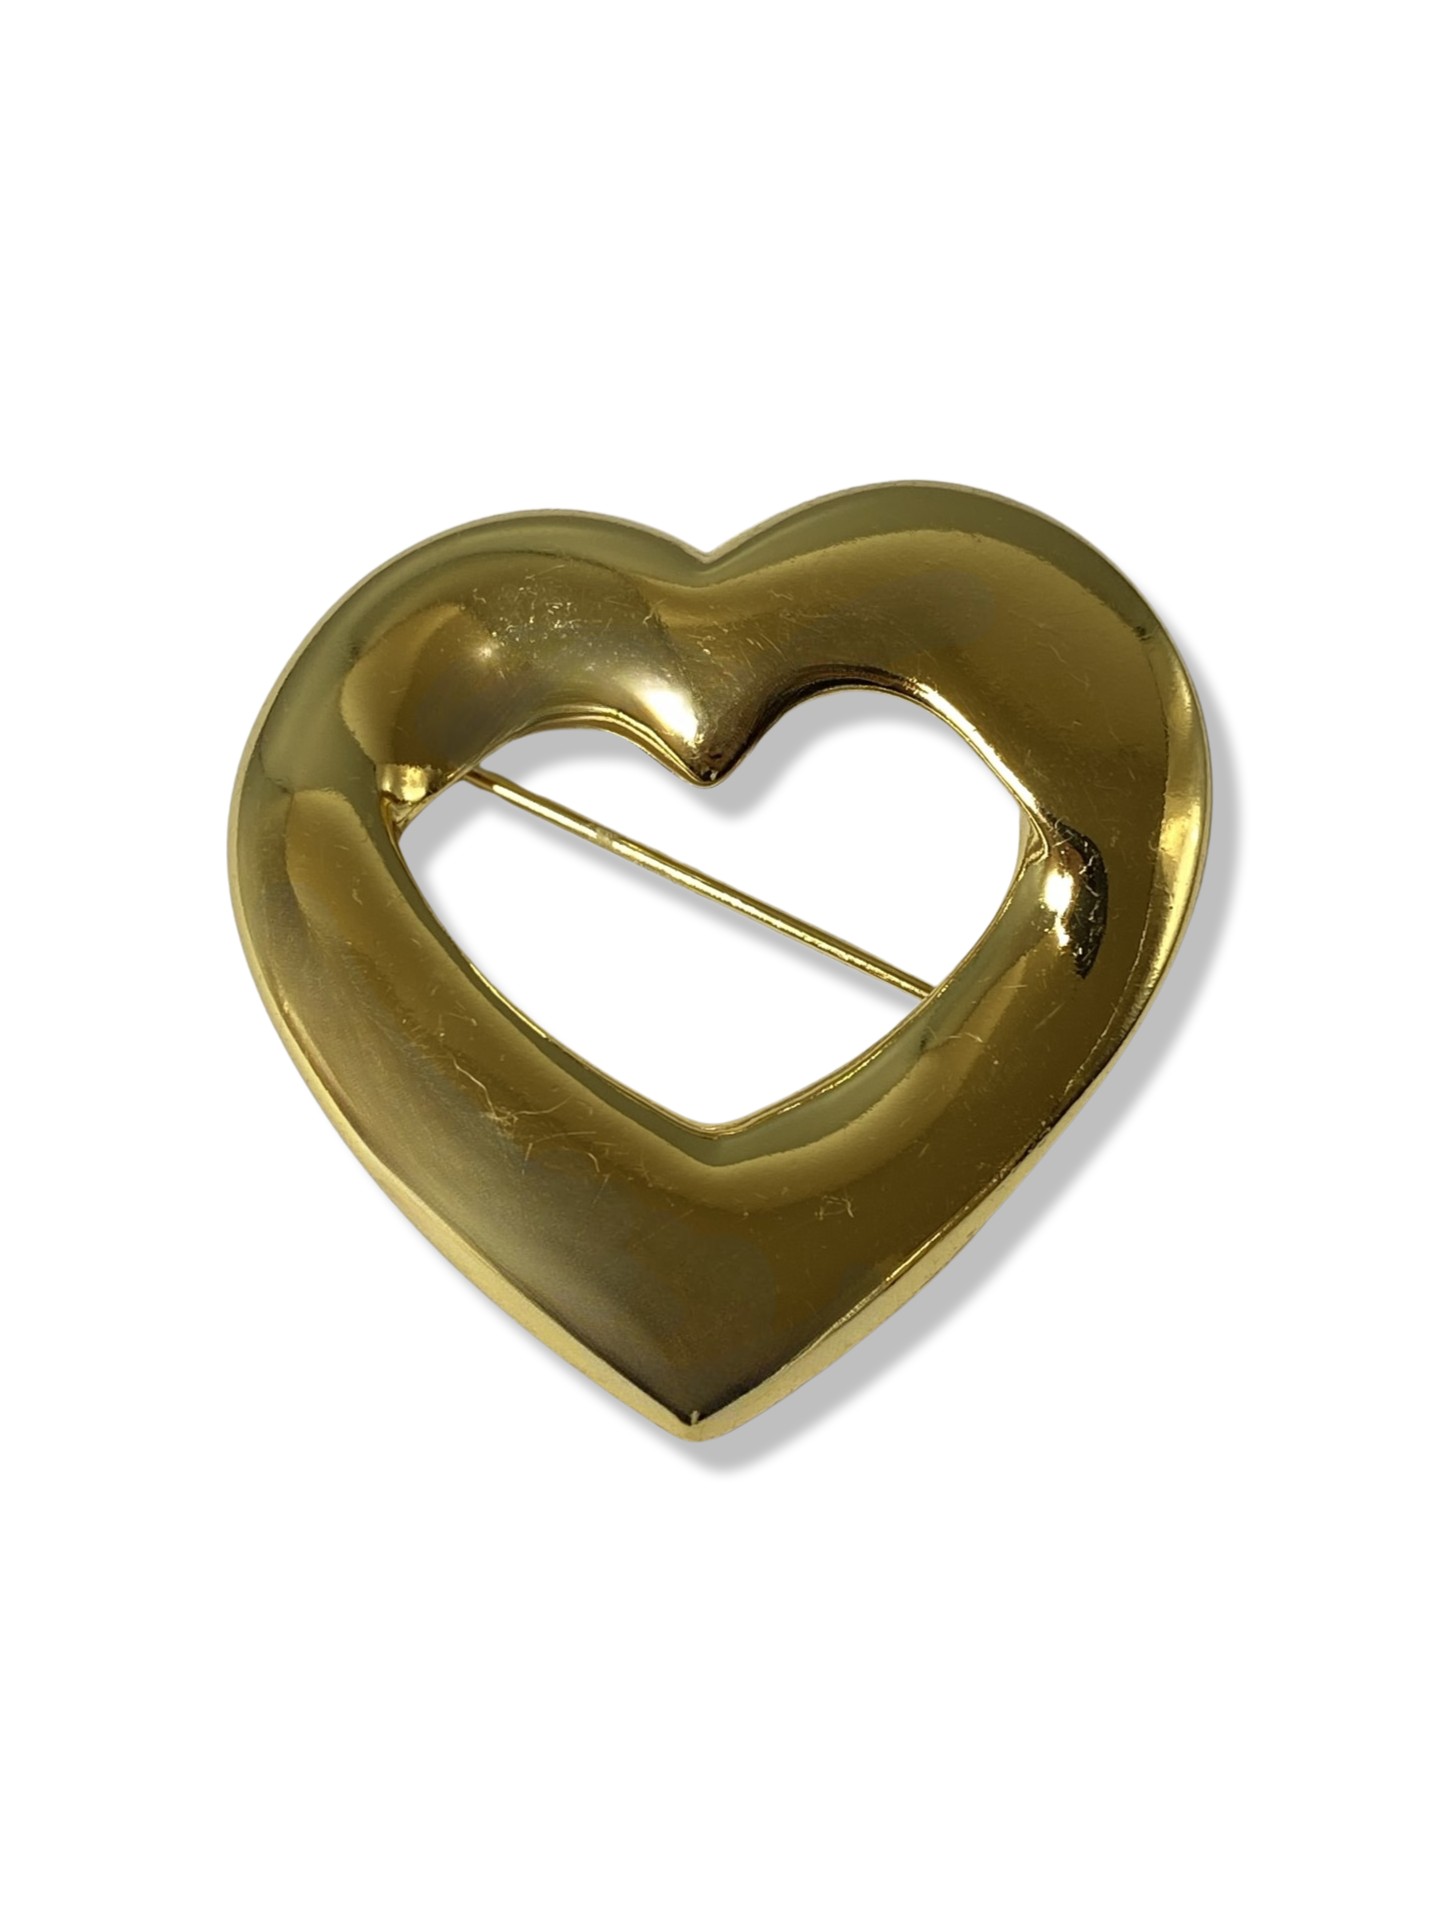 Yves Saint Laurent YSL love heart brooch weighing 19.23 grams